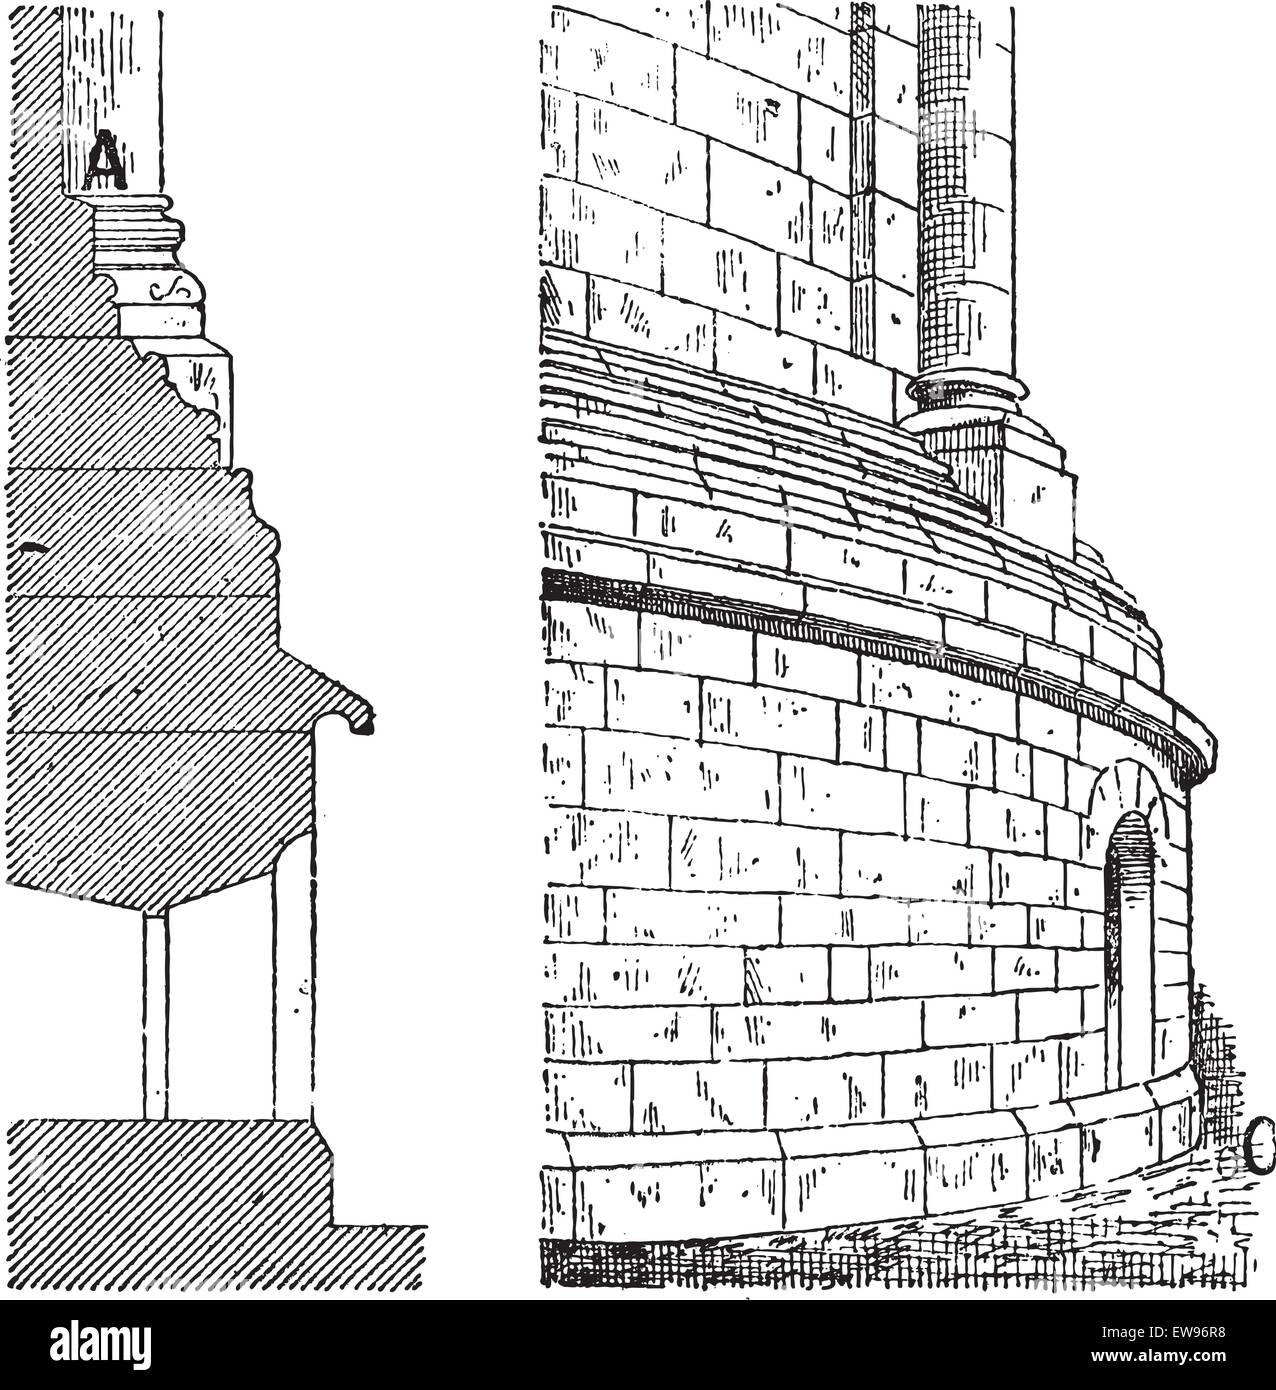 L'Est de l'Abside de la cathédrale de Spire, la vue de profil (gauche) et vue en perspective (à droite), au cours du 12e siècle, vintage engraved Illustration de Vecteur